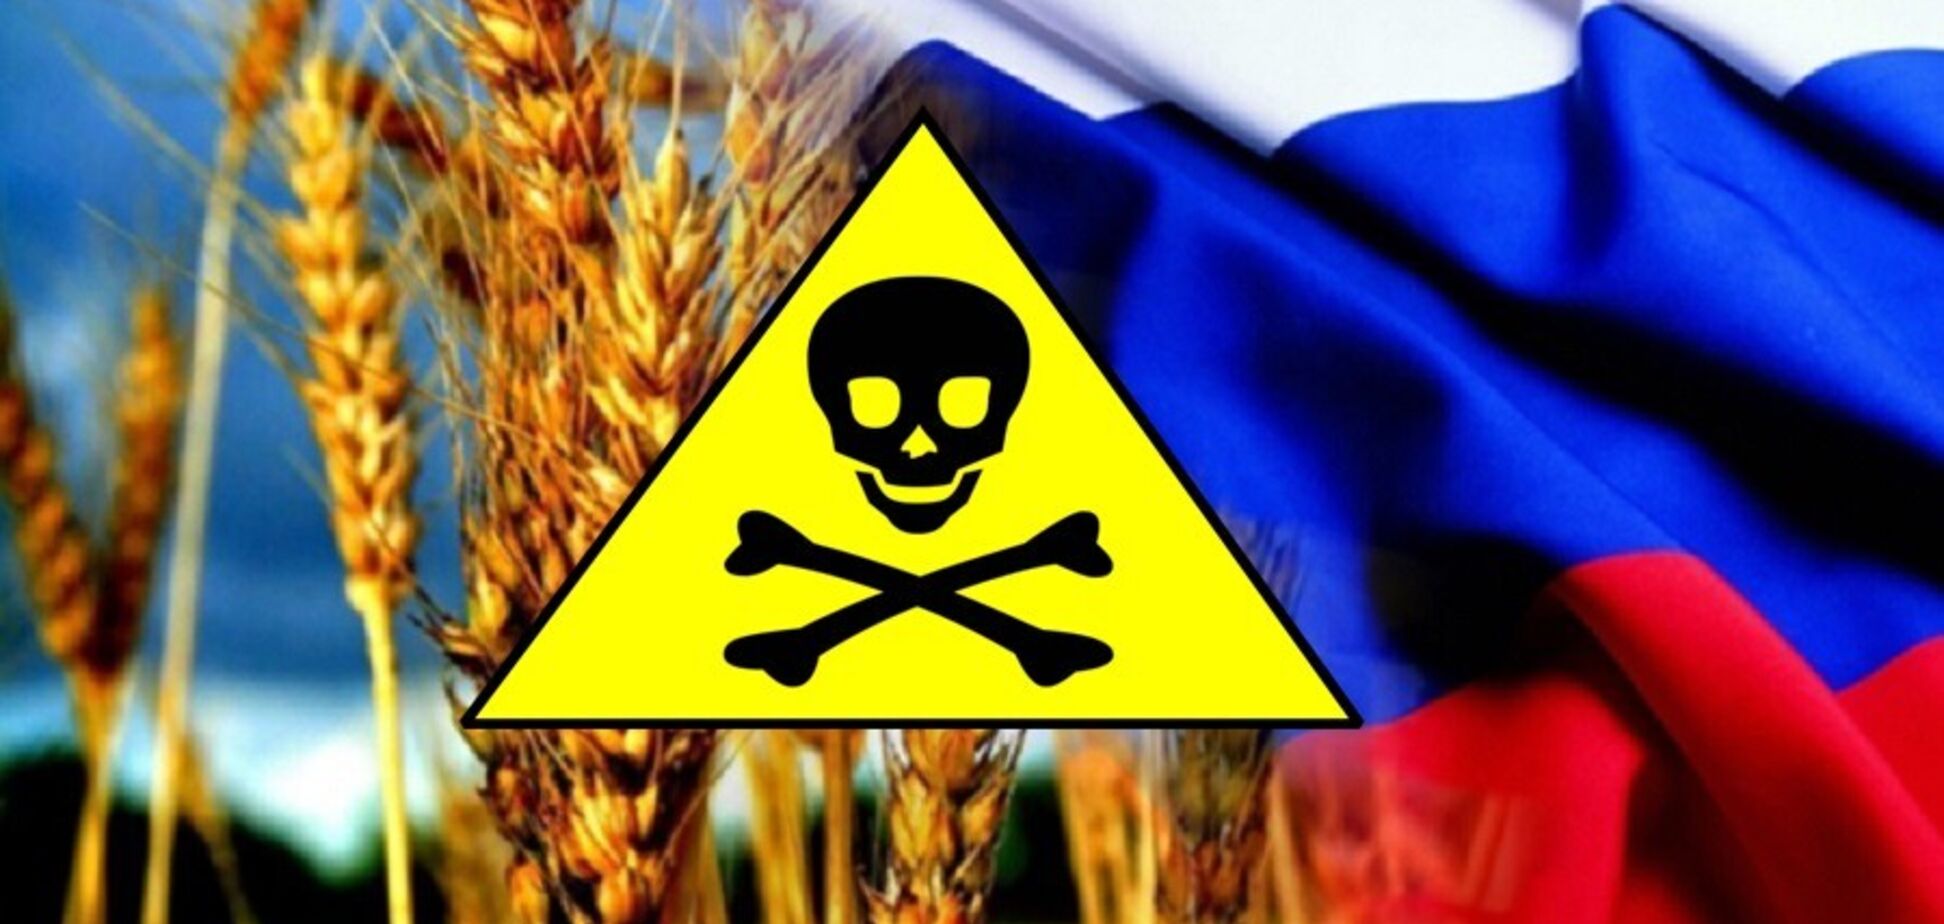 В России везде дефект: теперь грязная пшеница